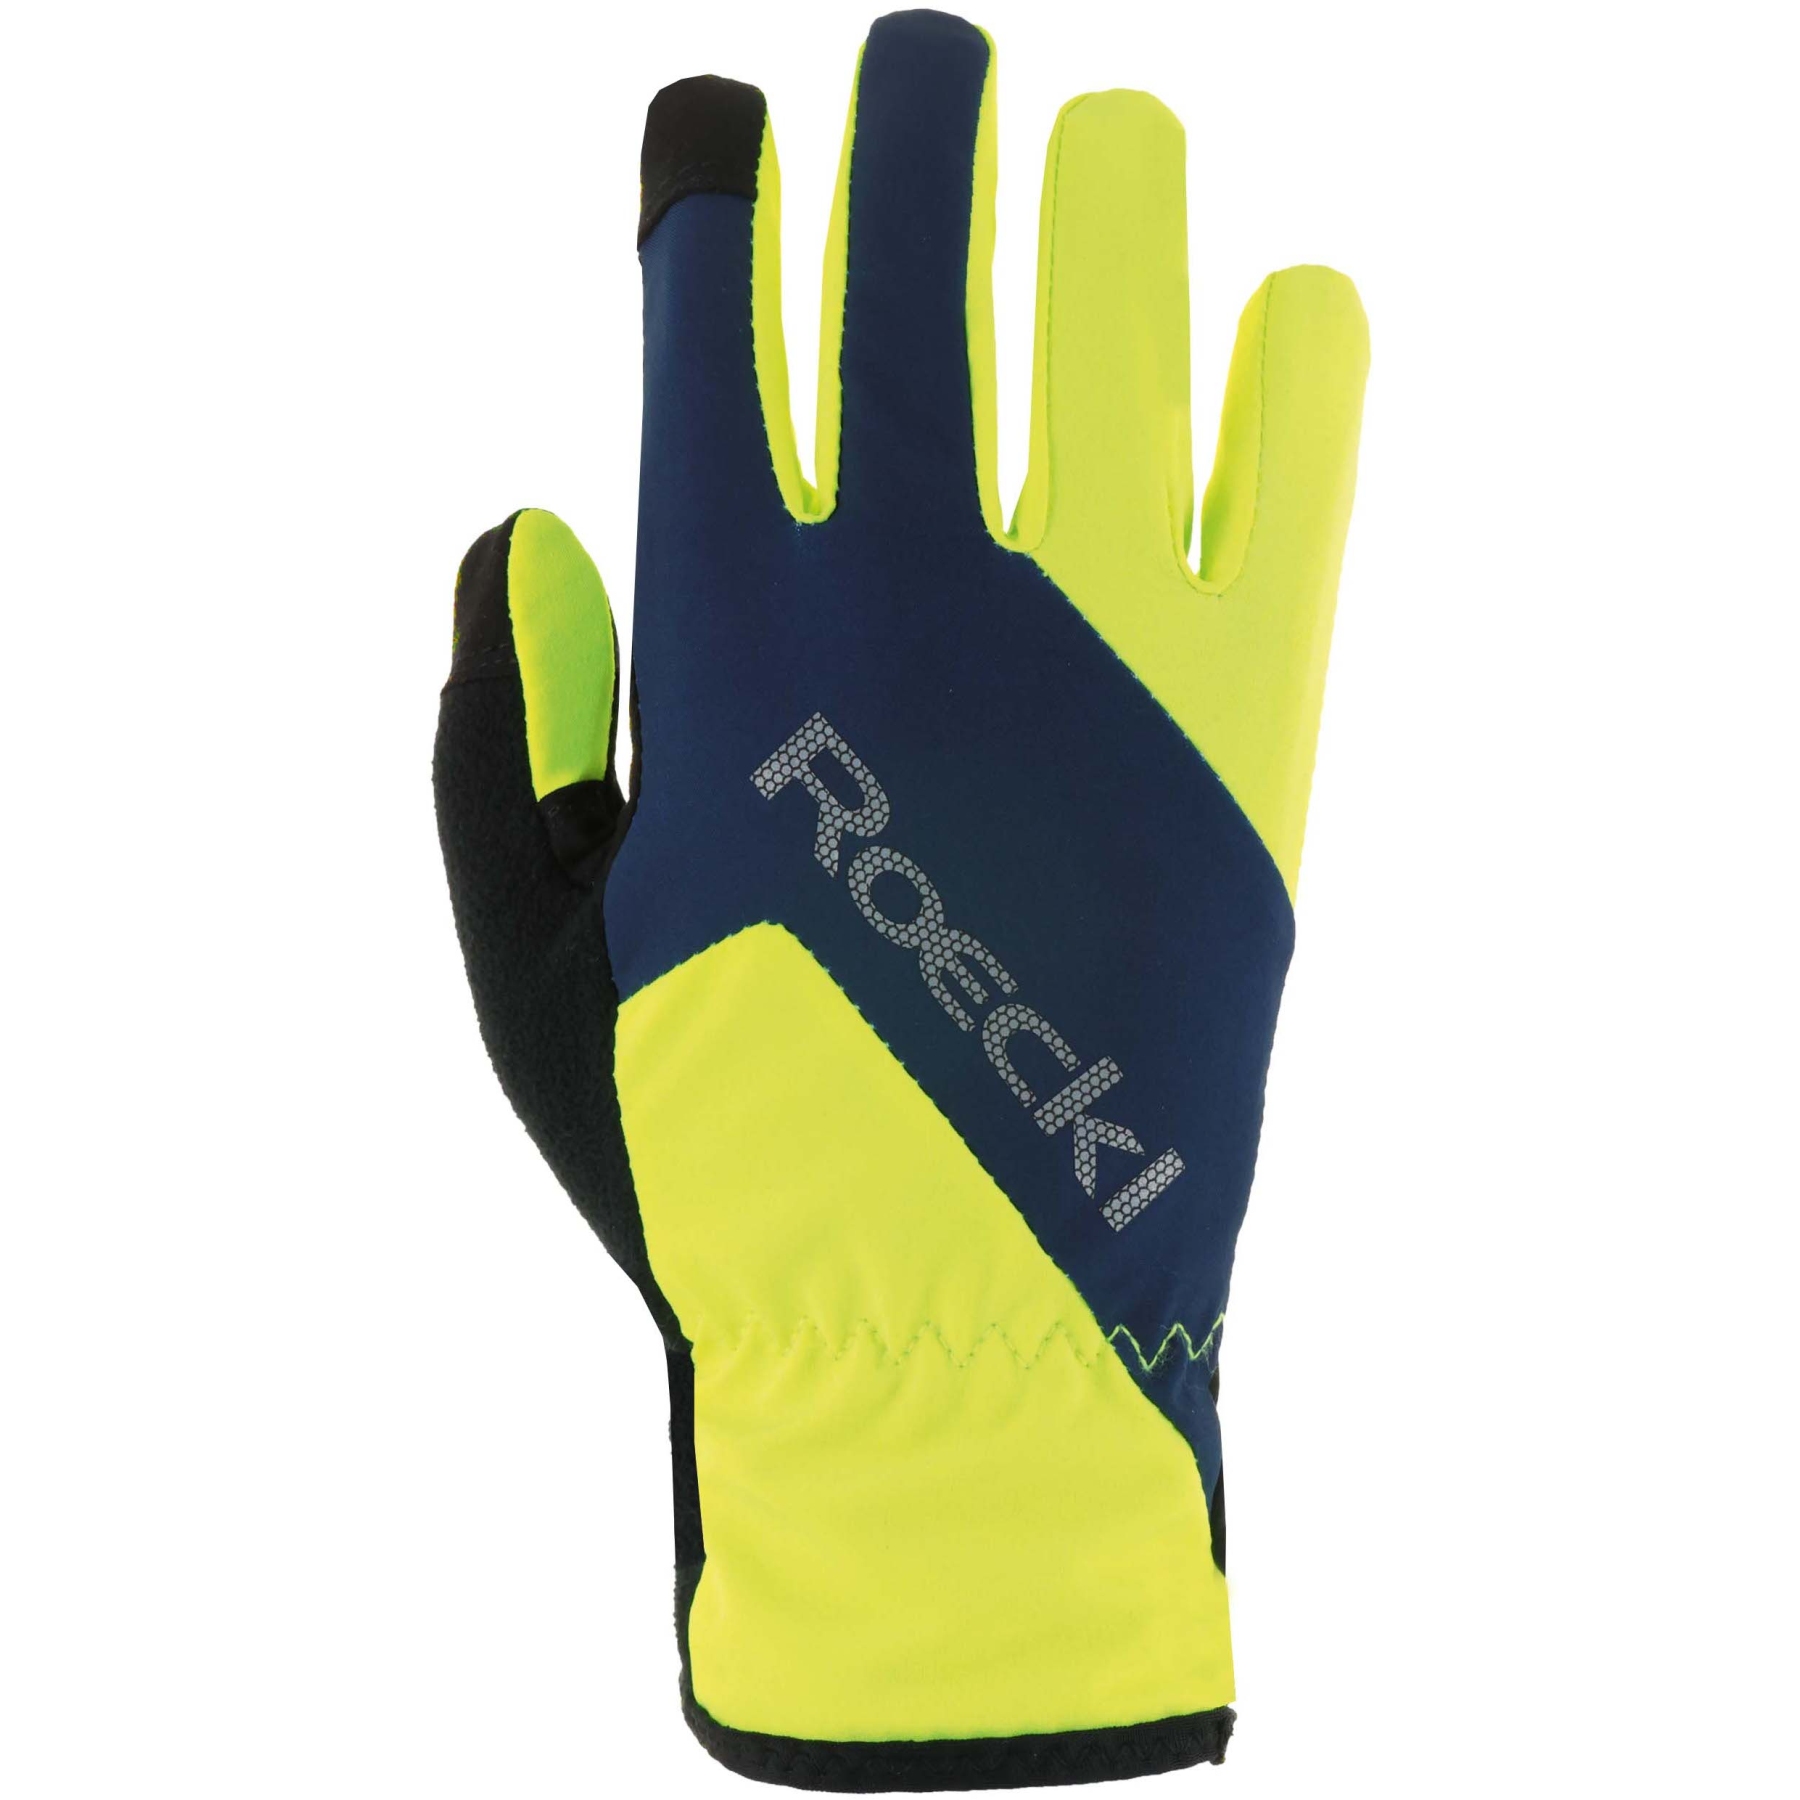 Productfoto van Roeckl Sports Zarasai Kinderen Fietshandschoenen - fluo yellow/dress blue 2101